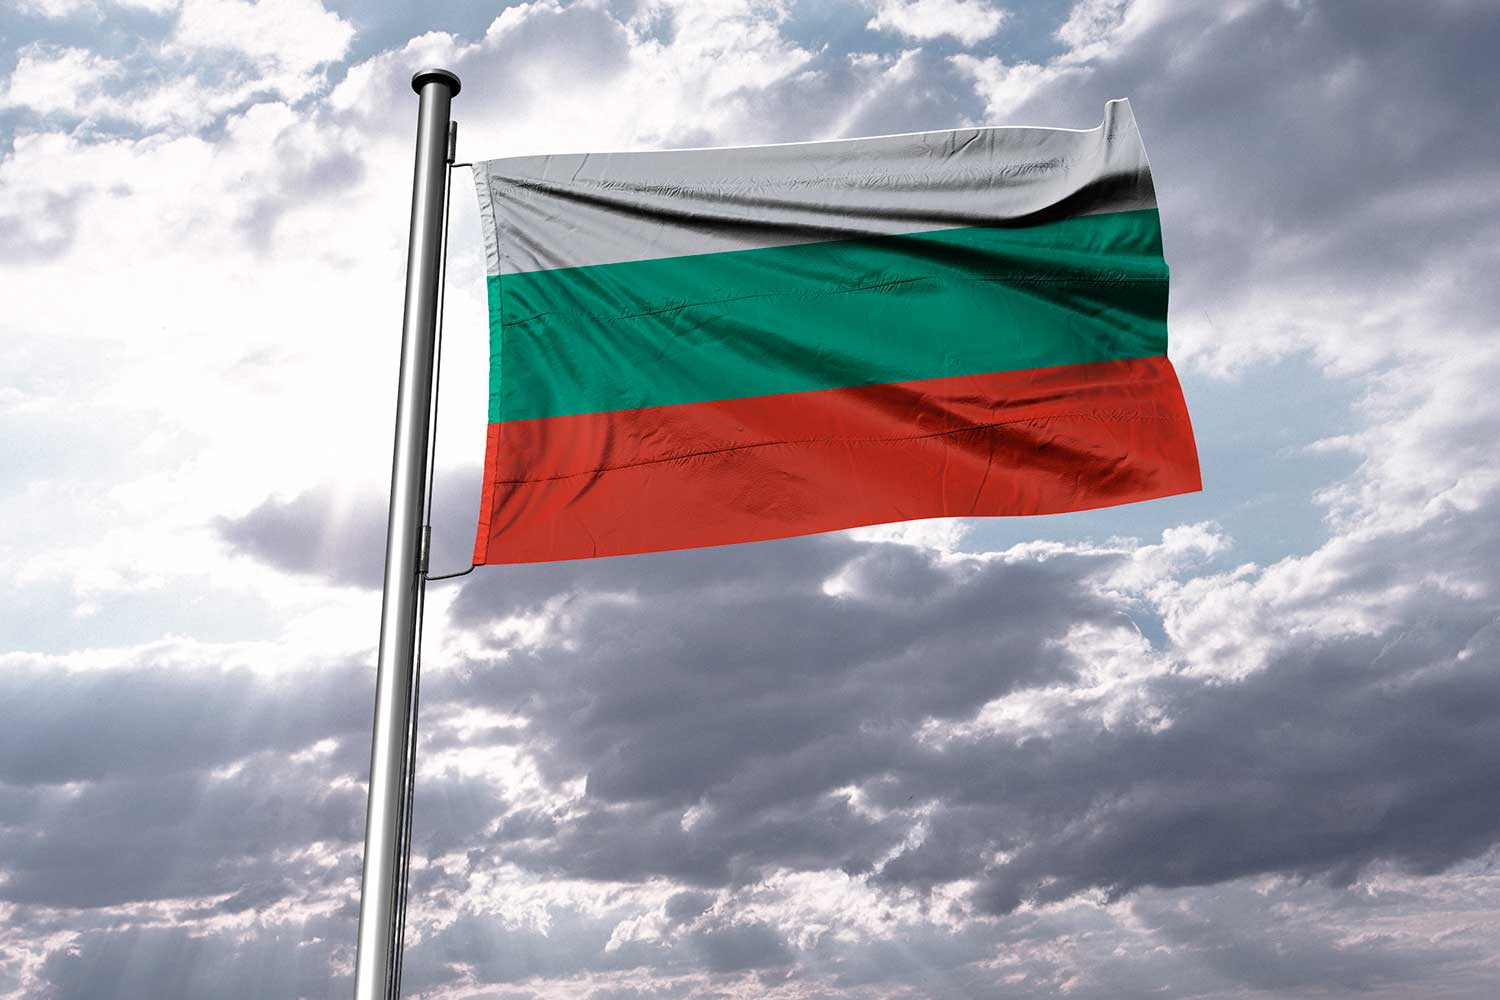 Пмж в болгарии для русских: бизнес-иммиграция, переезд пенсионеров, отзывы о жизни и адаптации